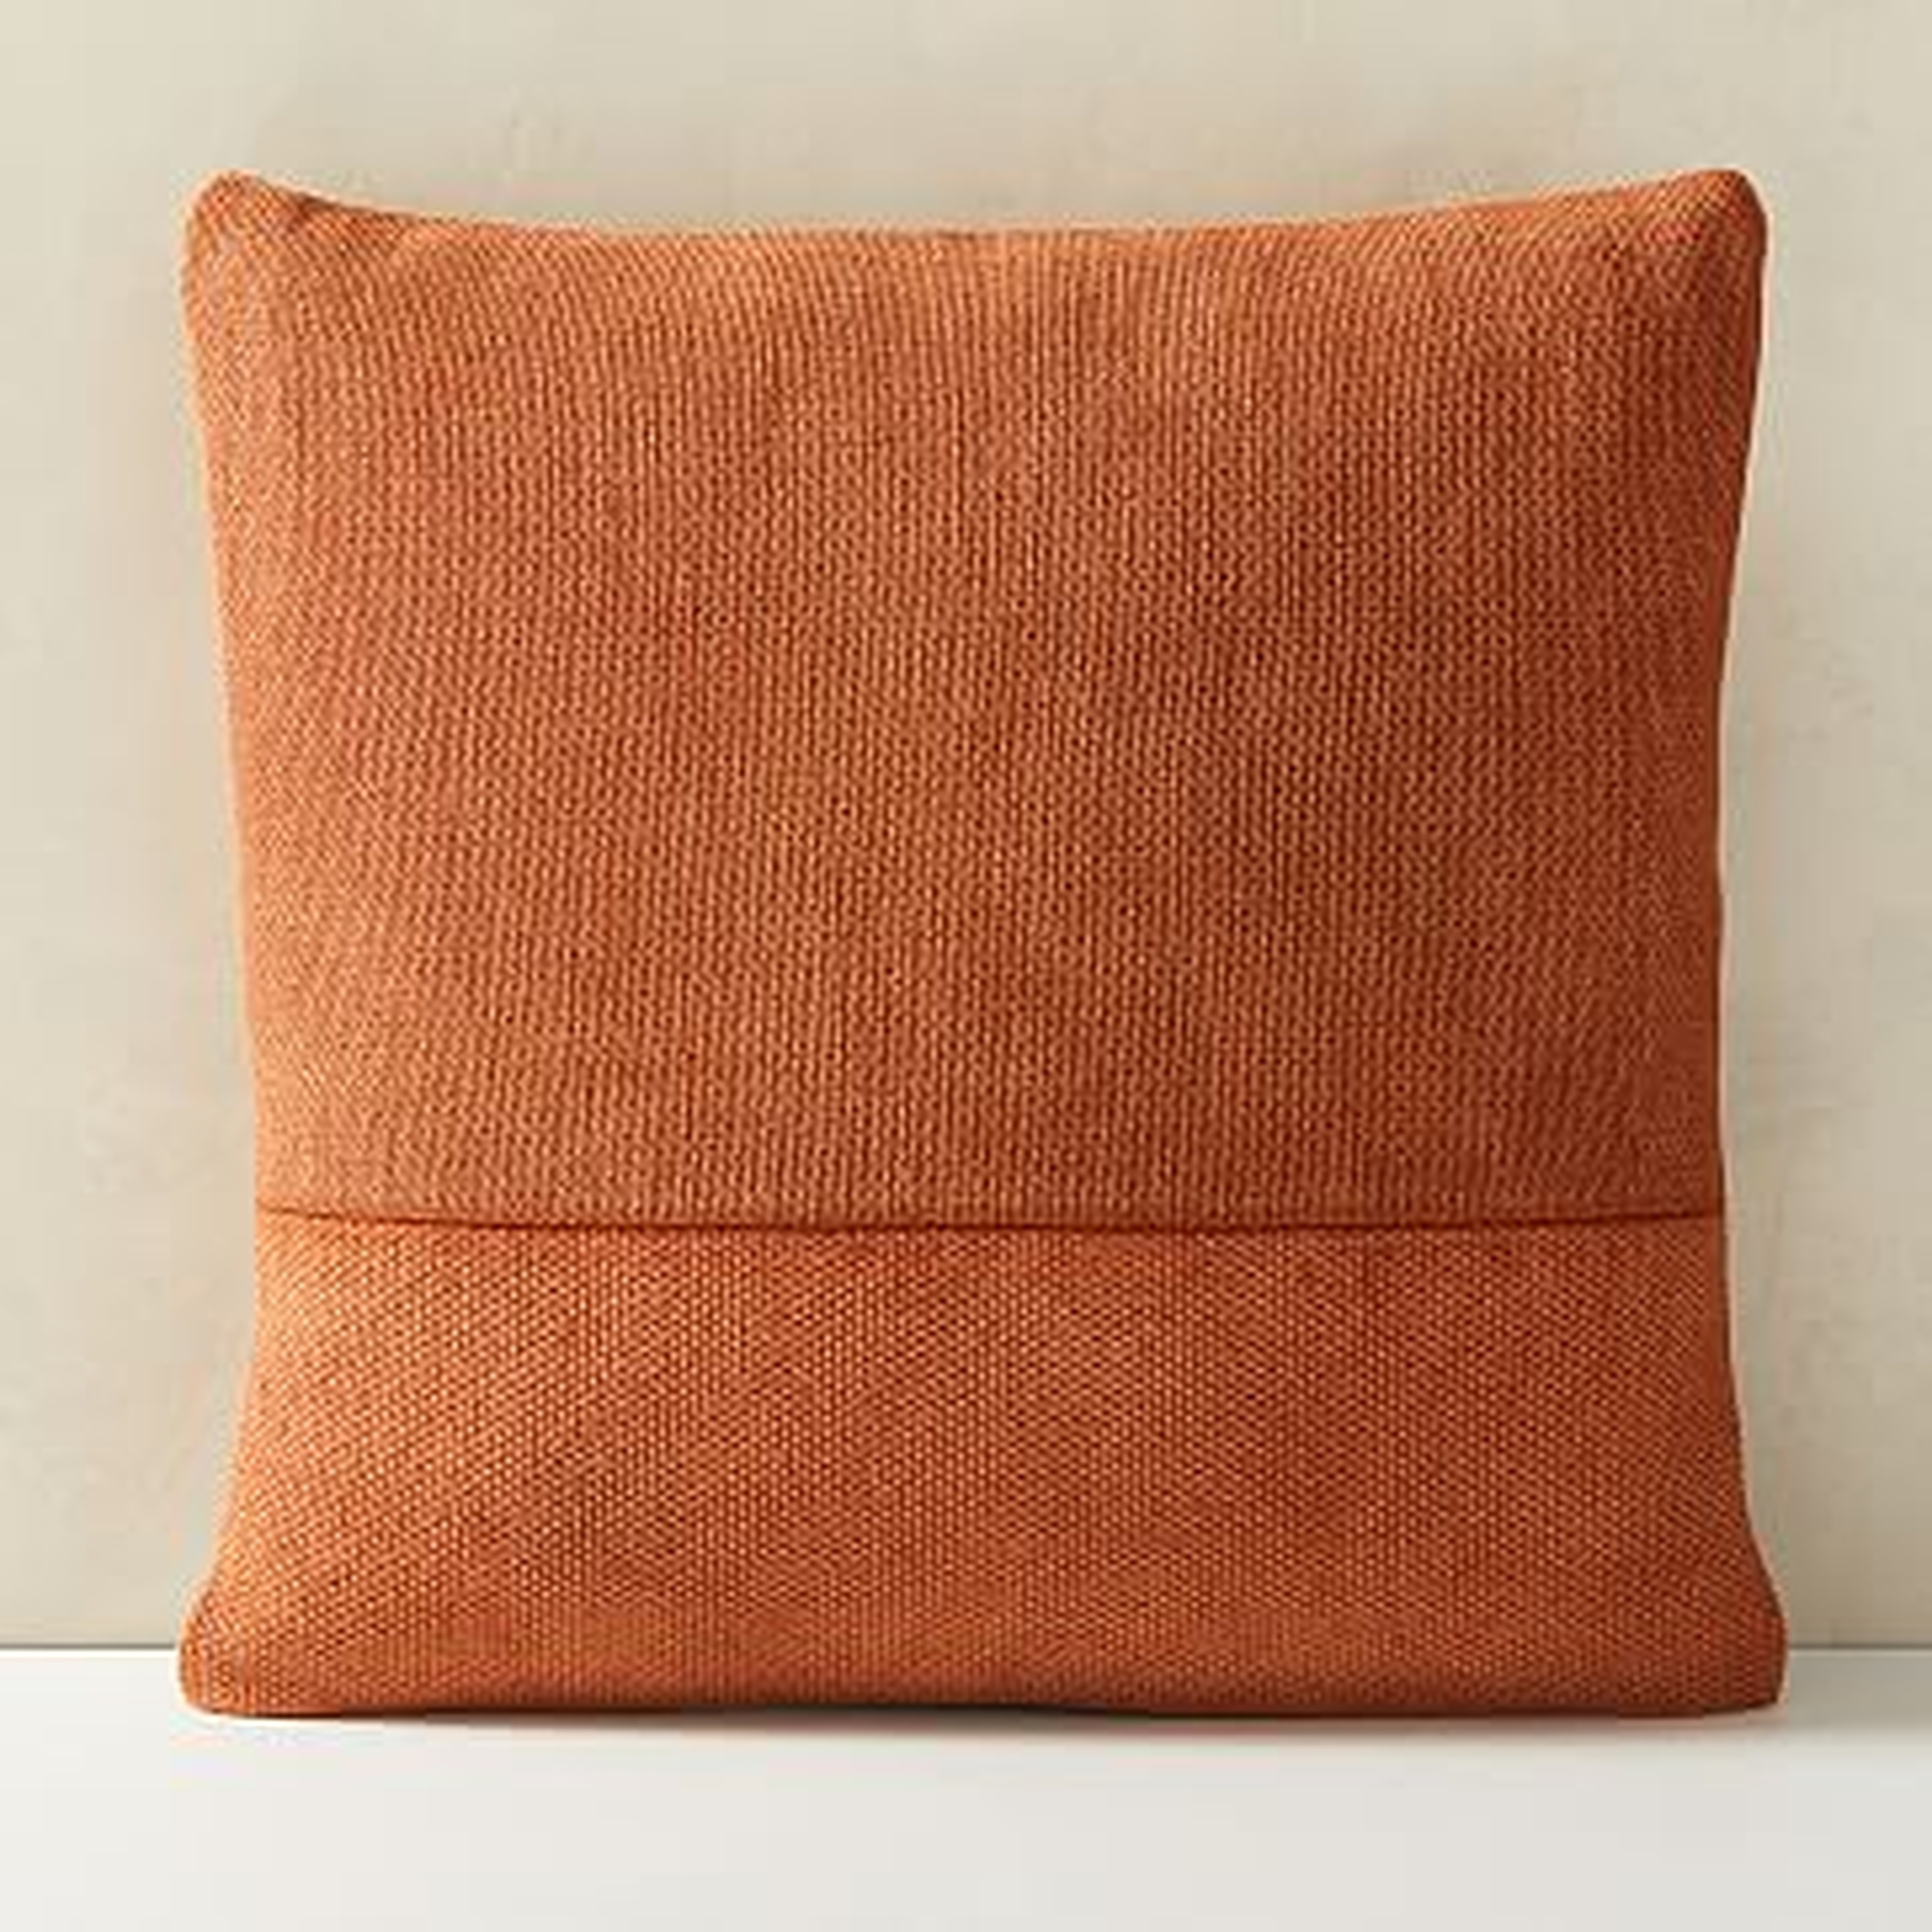 Cotton Canvas Pillow Cover, Set of 2, Copper Rust, 18"x18" - West Elm